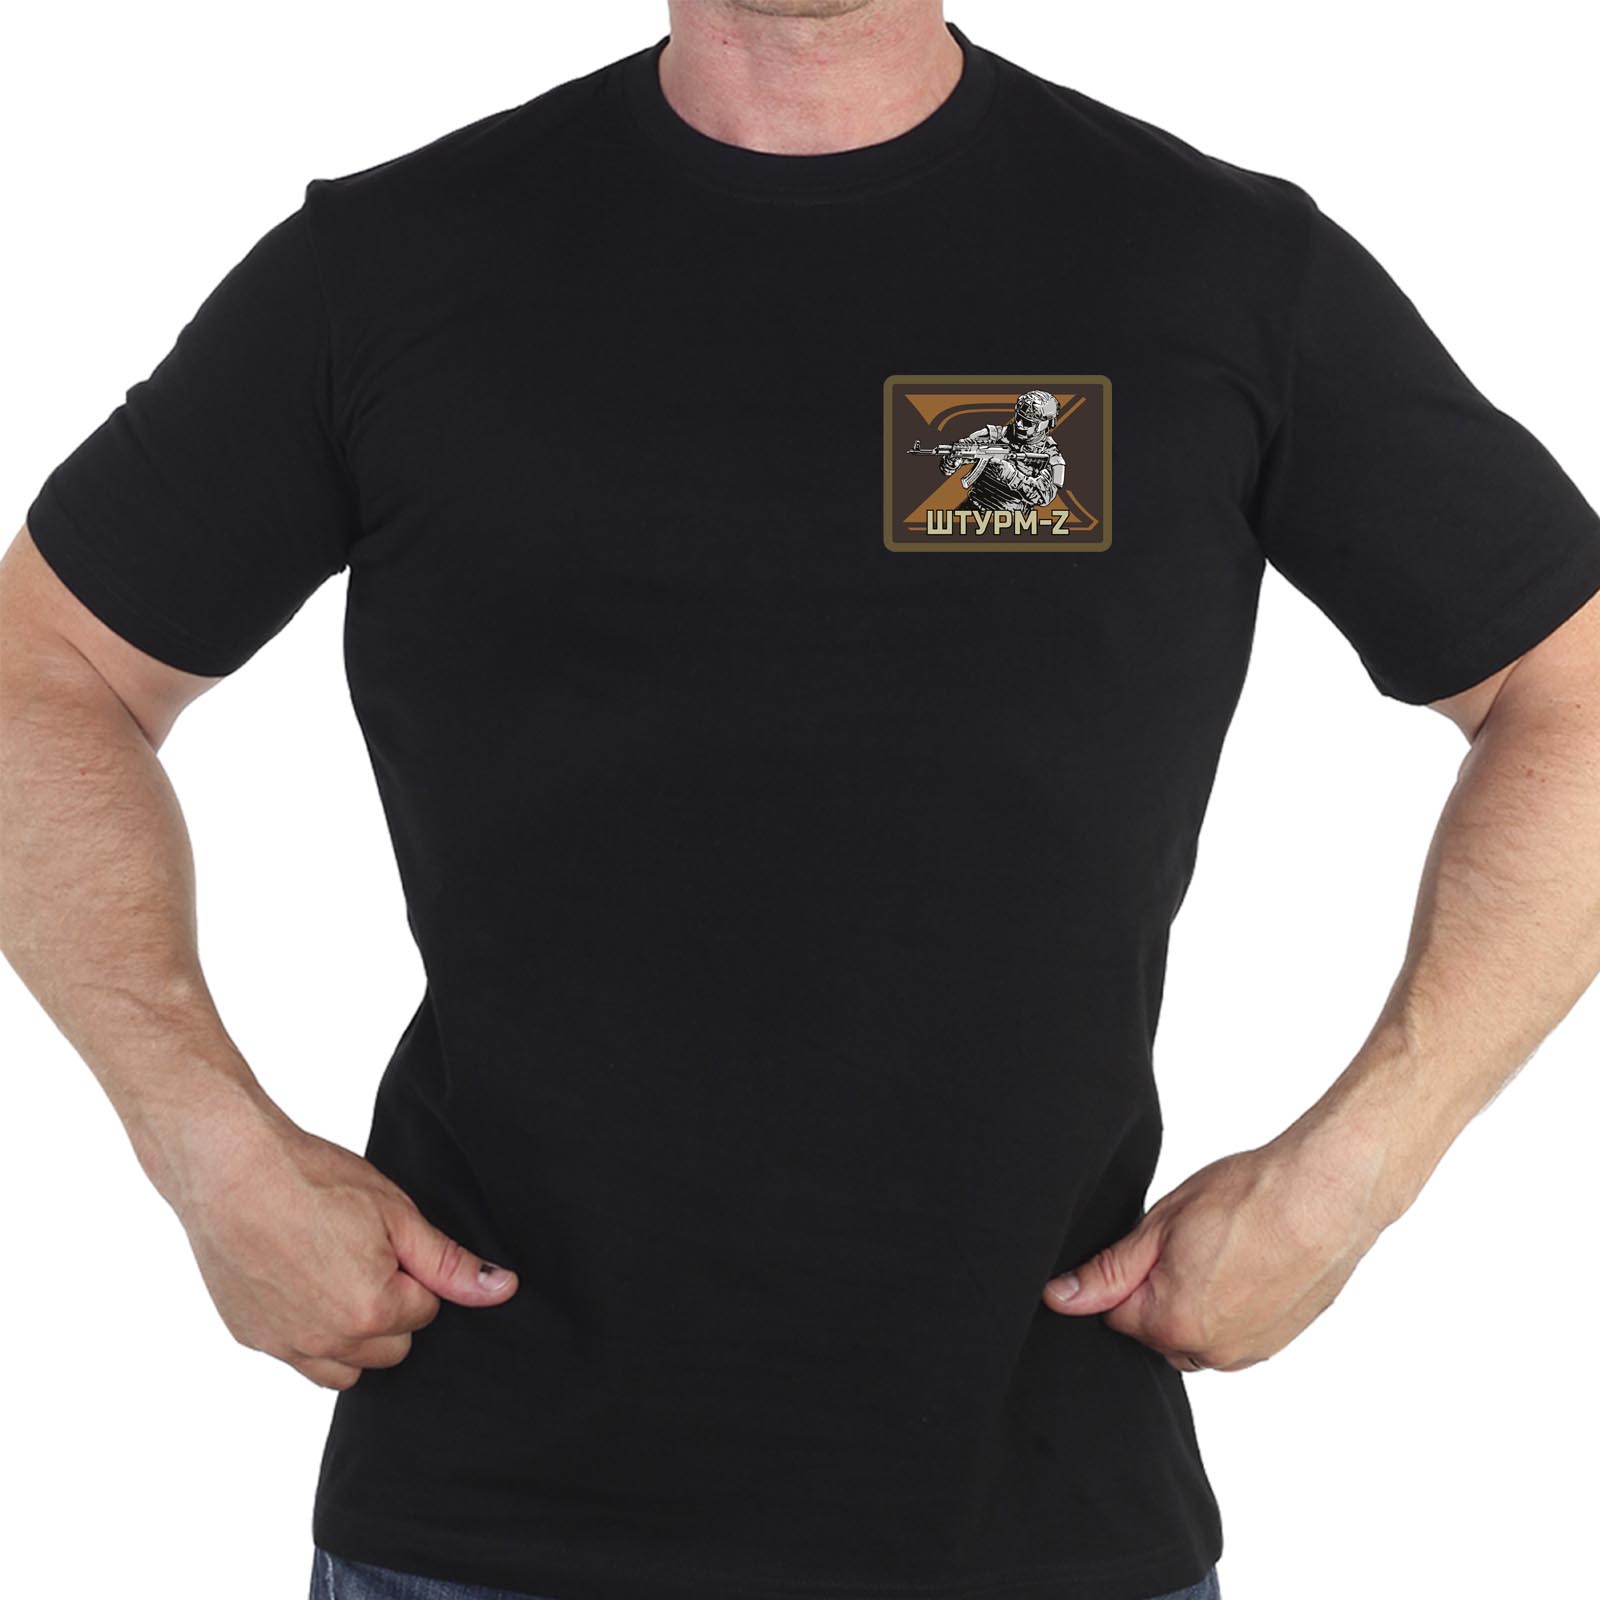 Купить черную футболку с термотрансфером в в стиле Z "Штурм"